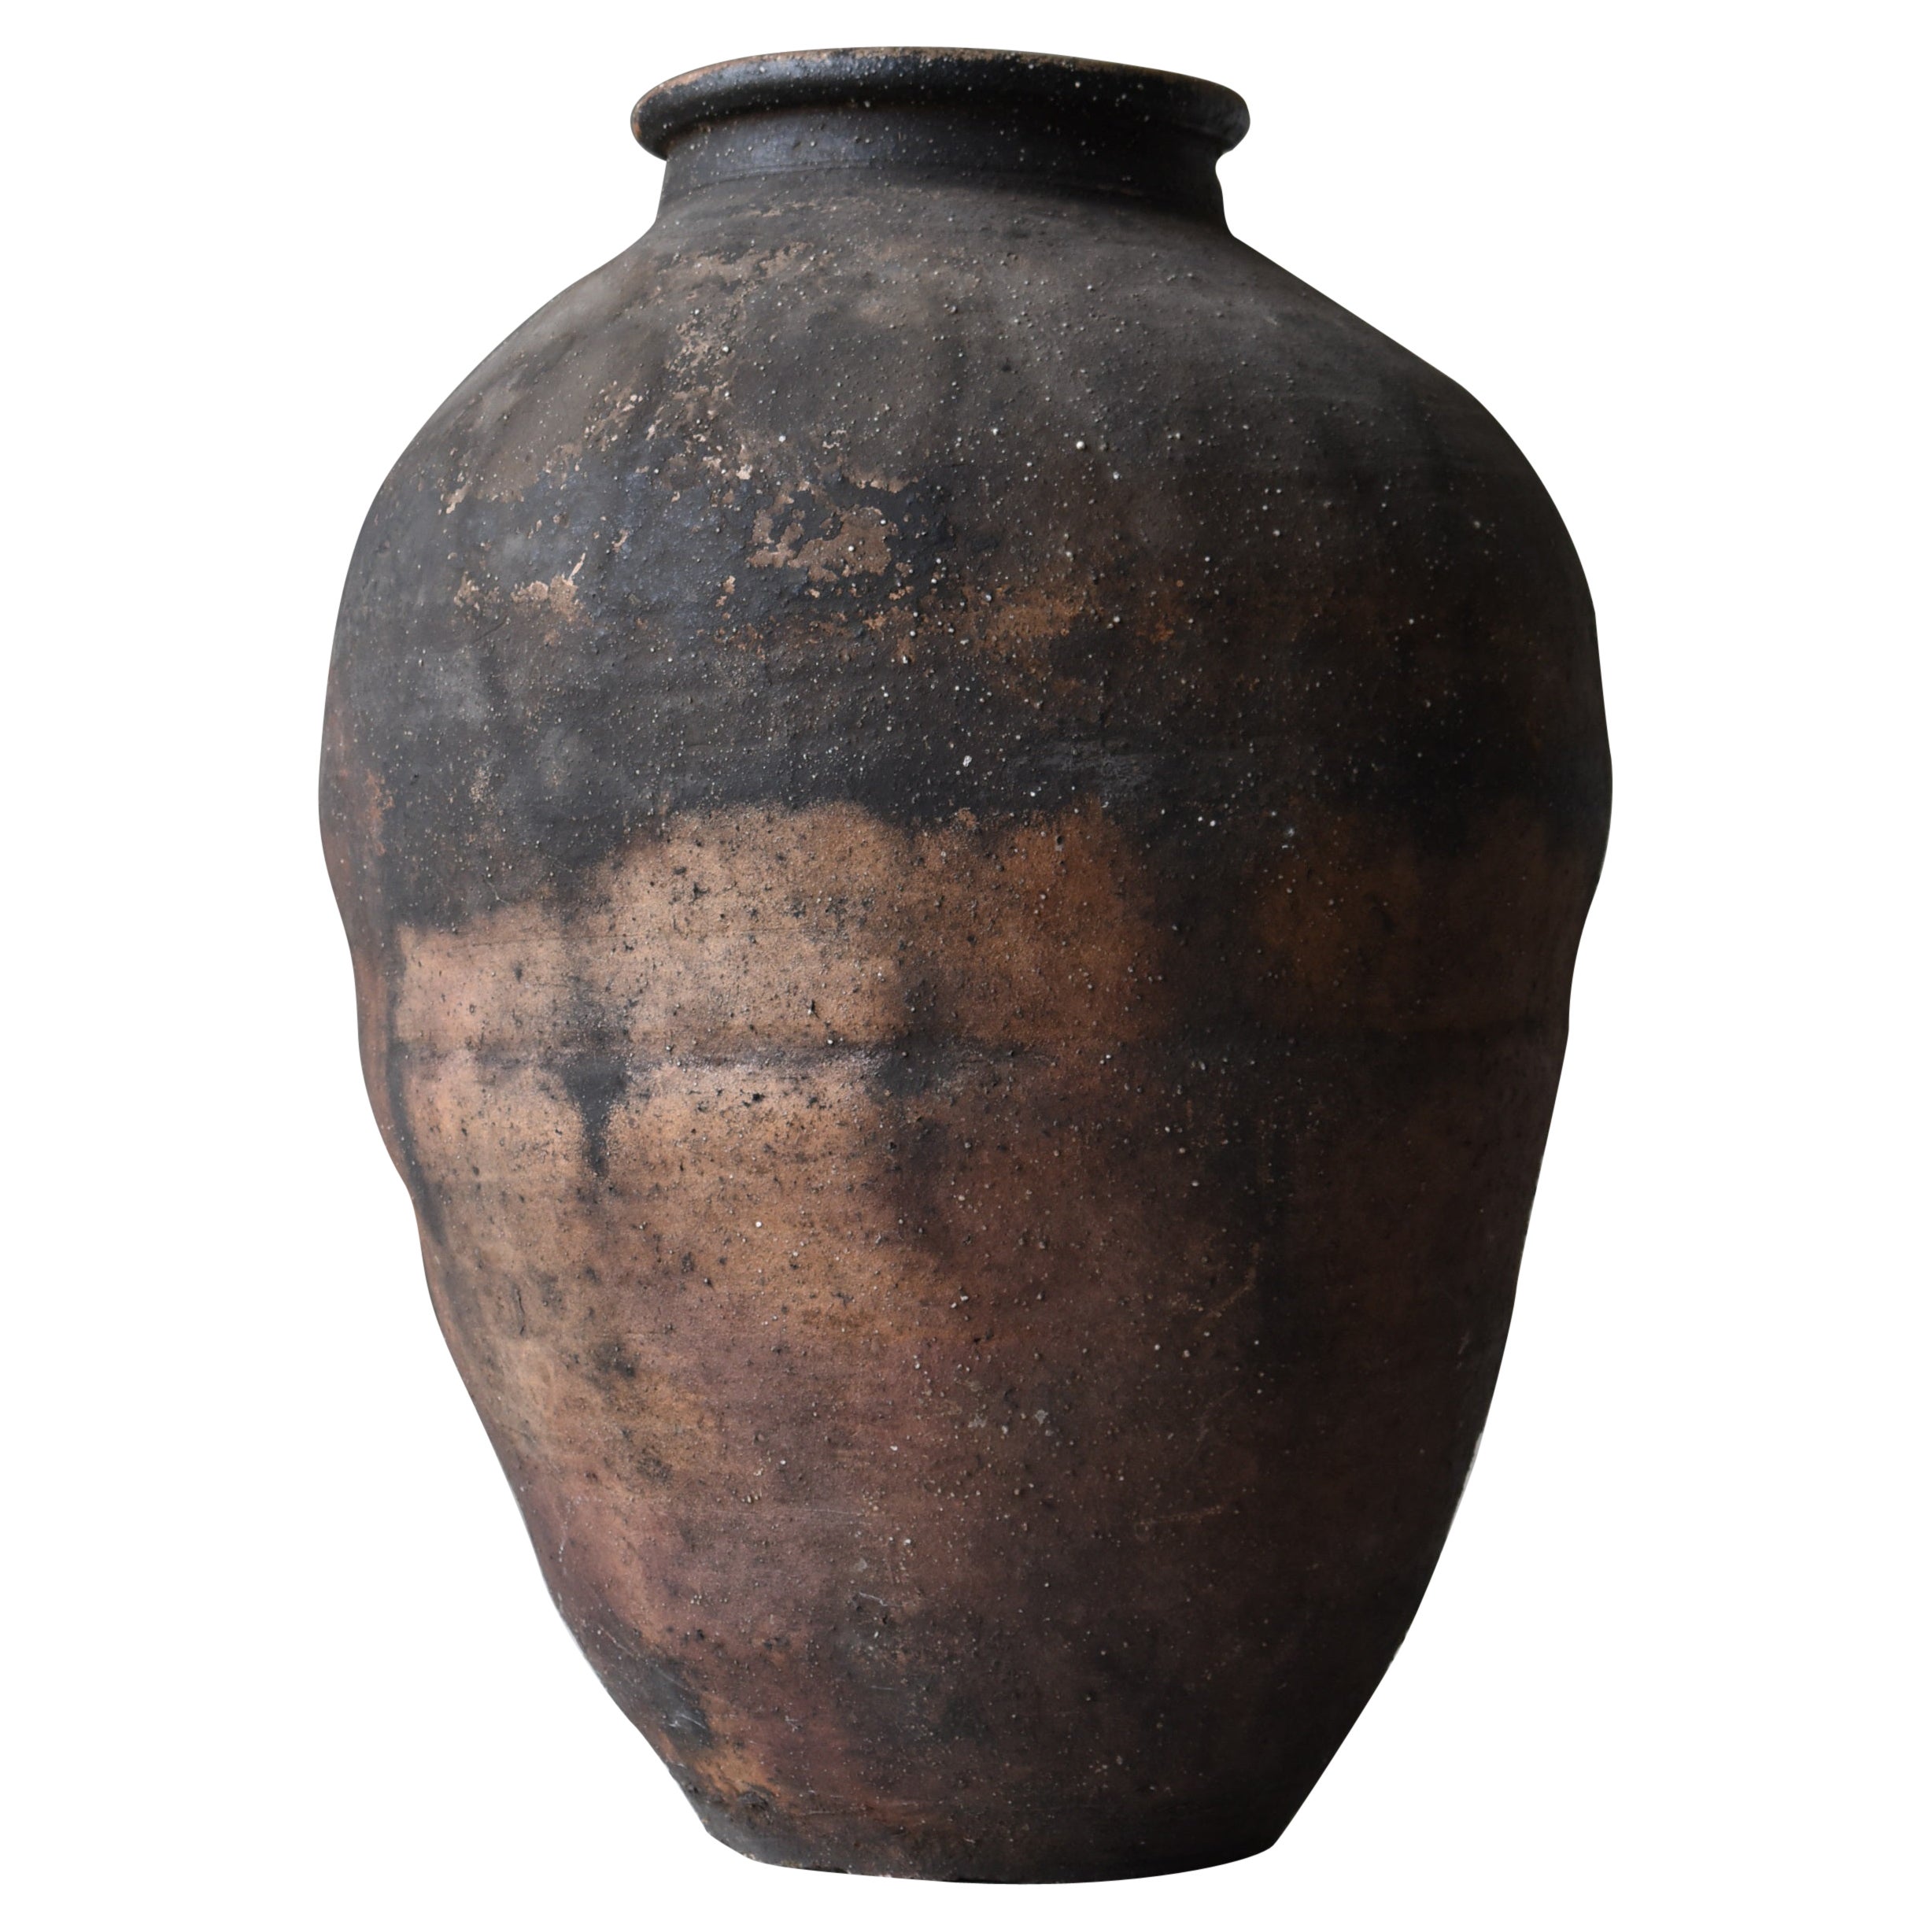 Japanese Antique Huge Pottery 1800s-1860s/Tsubo Flower Vase Vessel Wabisabi Art